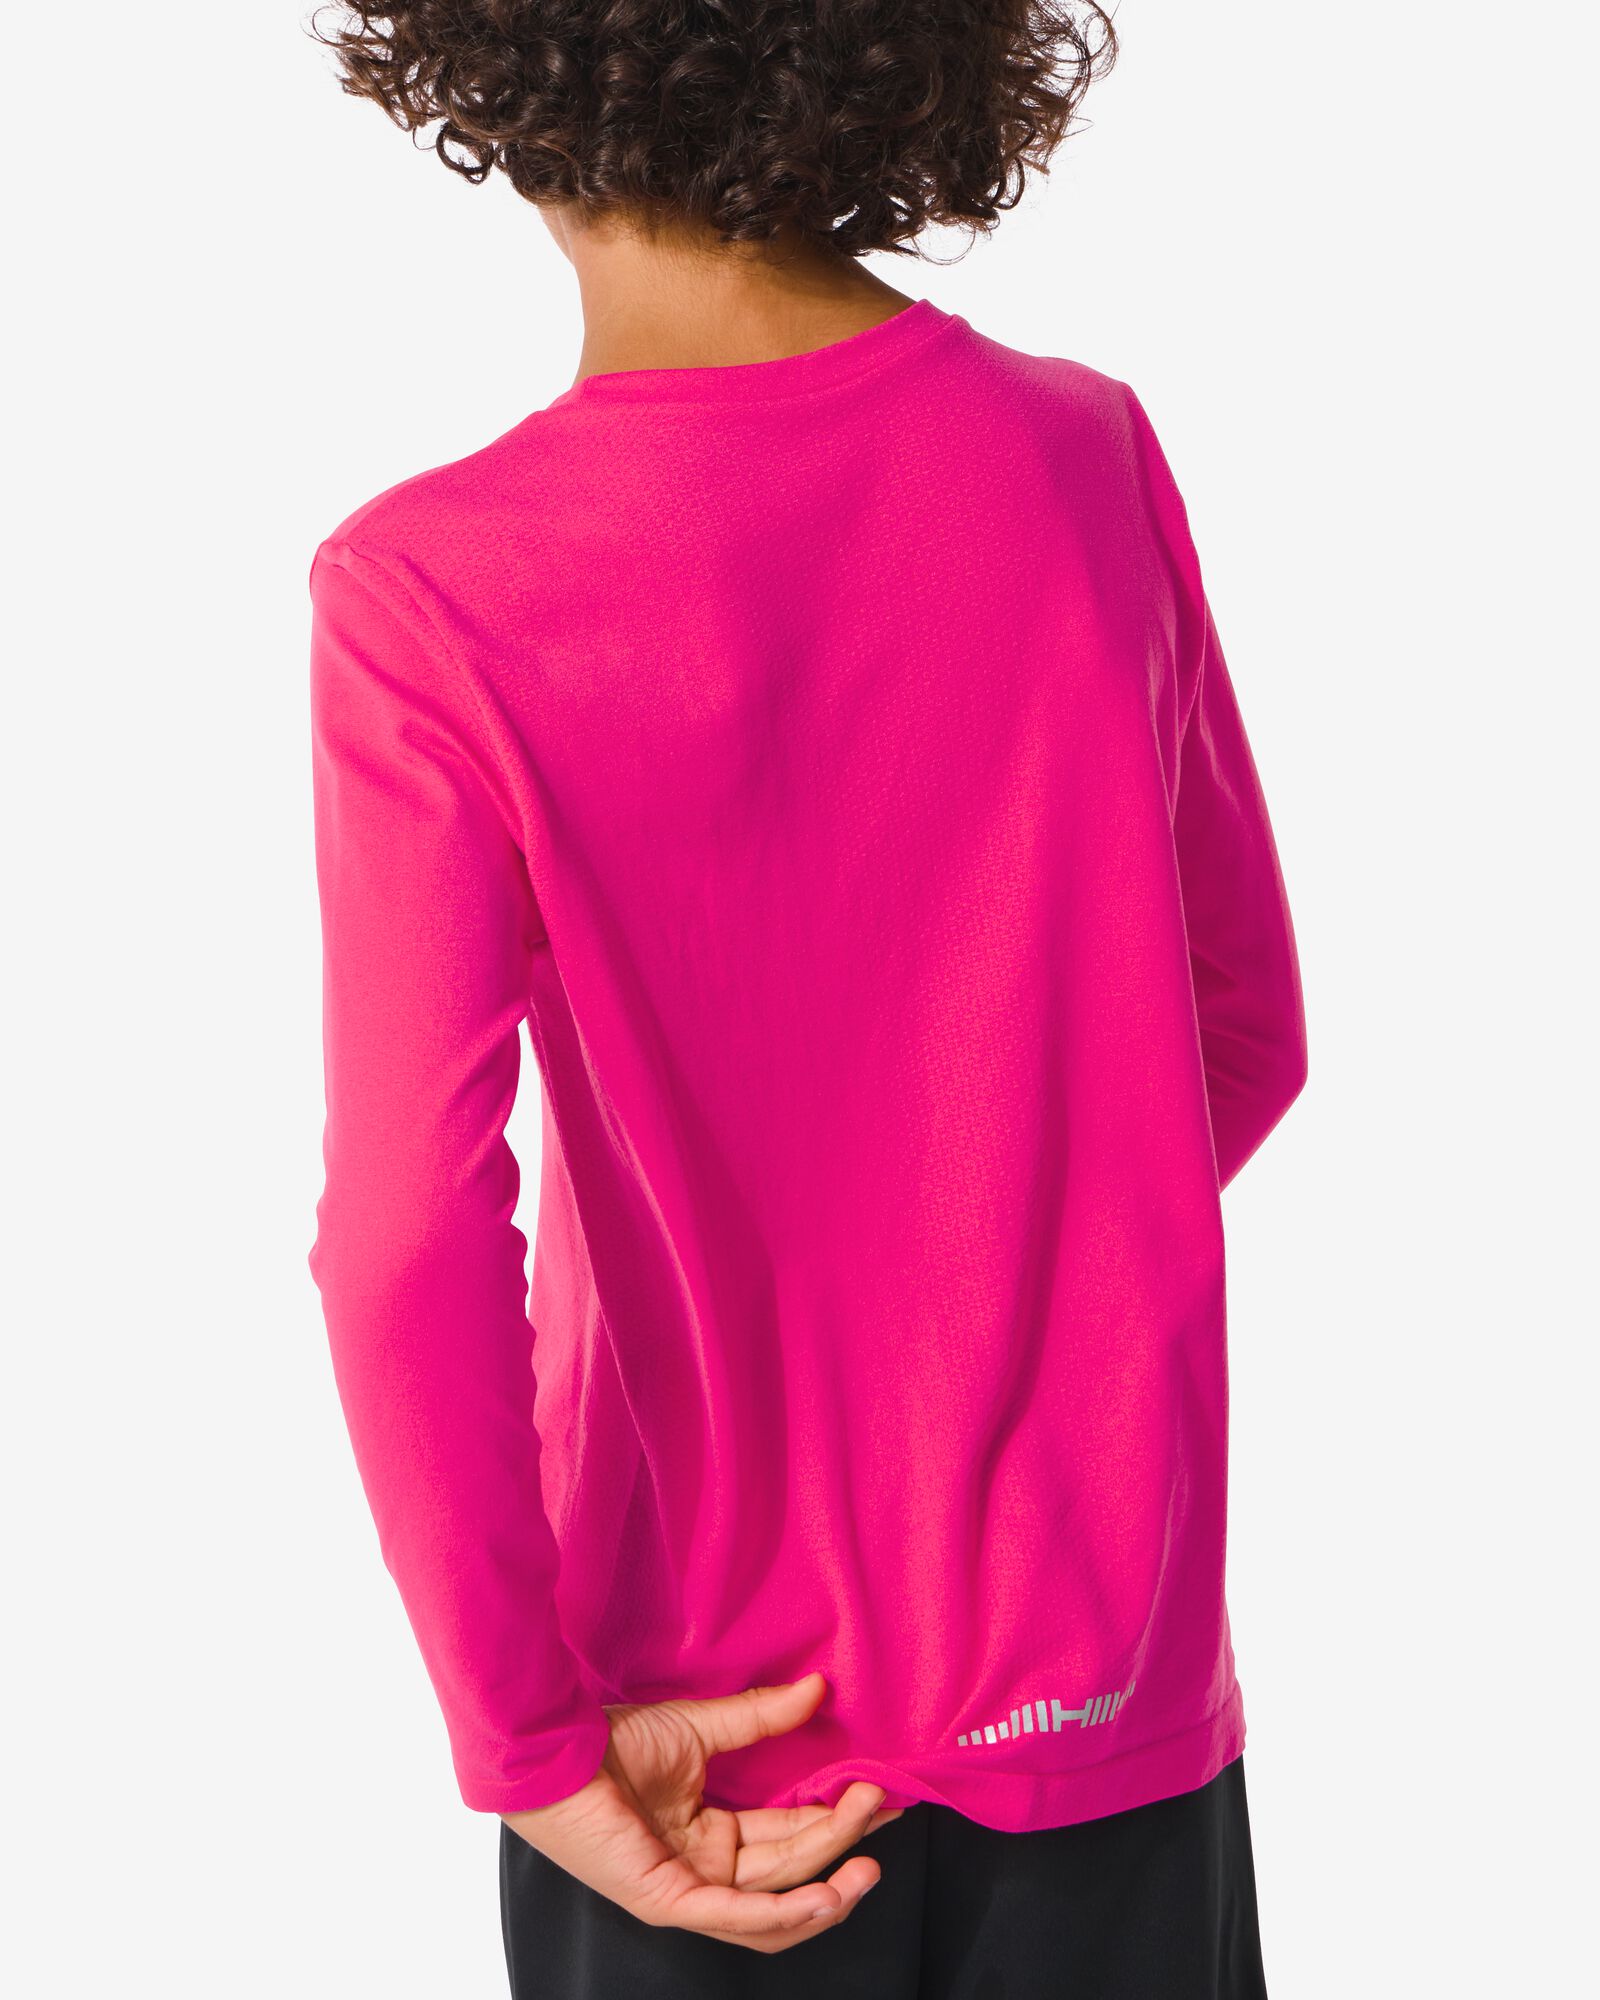 naadloos kinder sportshirt roze 134/140 - 36090363 - HEMA